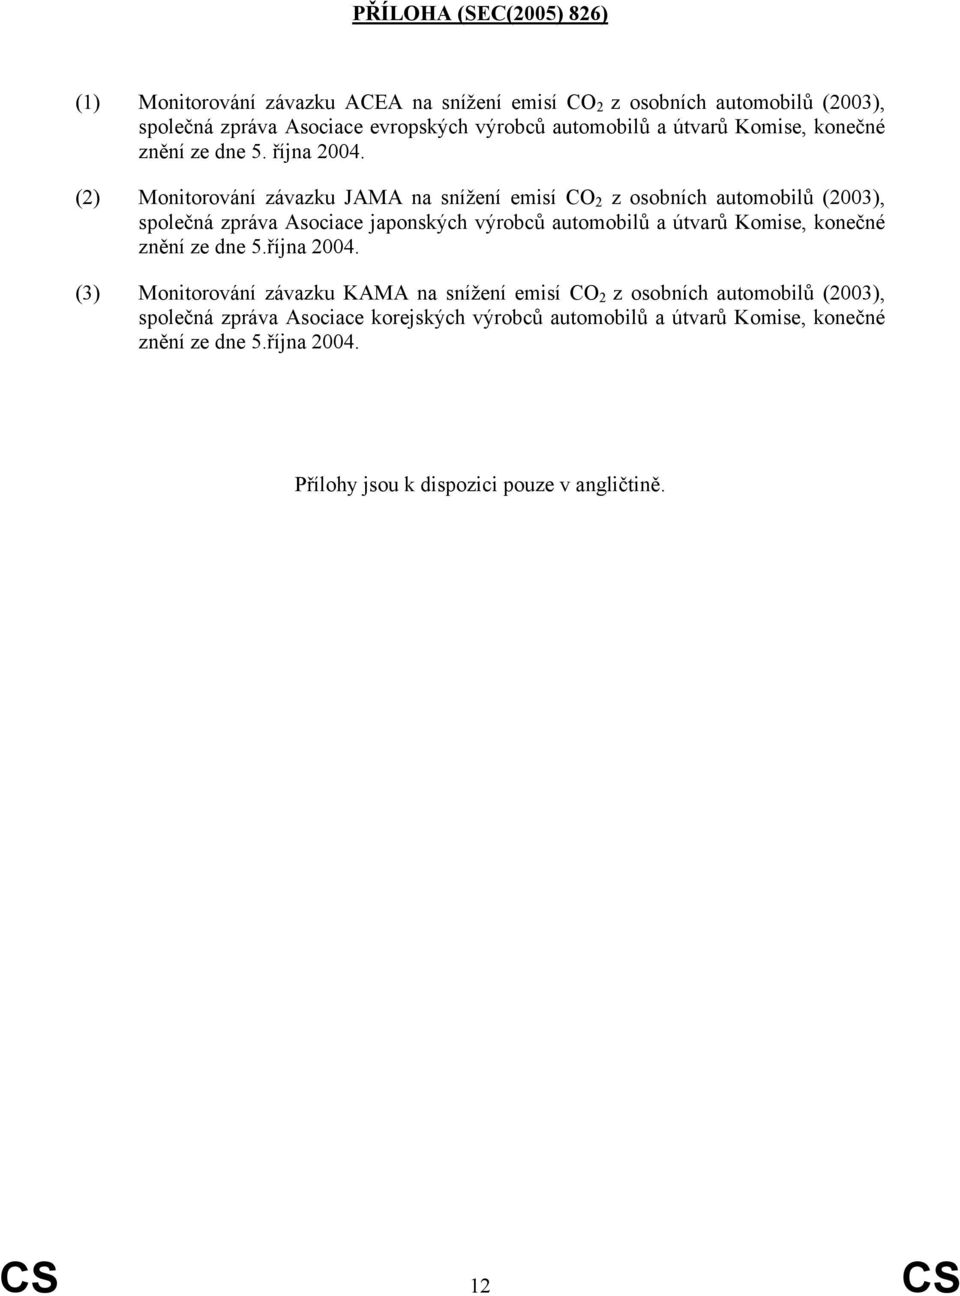 (2) Monitorování závazku JAMA na snížení emisí CO 2 z osobních automobilů (2003), společná zpráva Asociace japonských výrobců automobilů a útvarů Komise, konečné